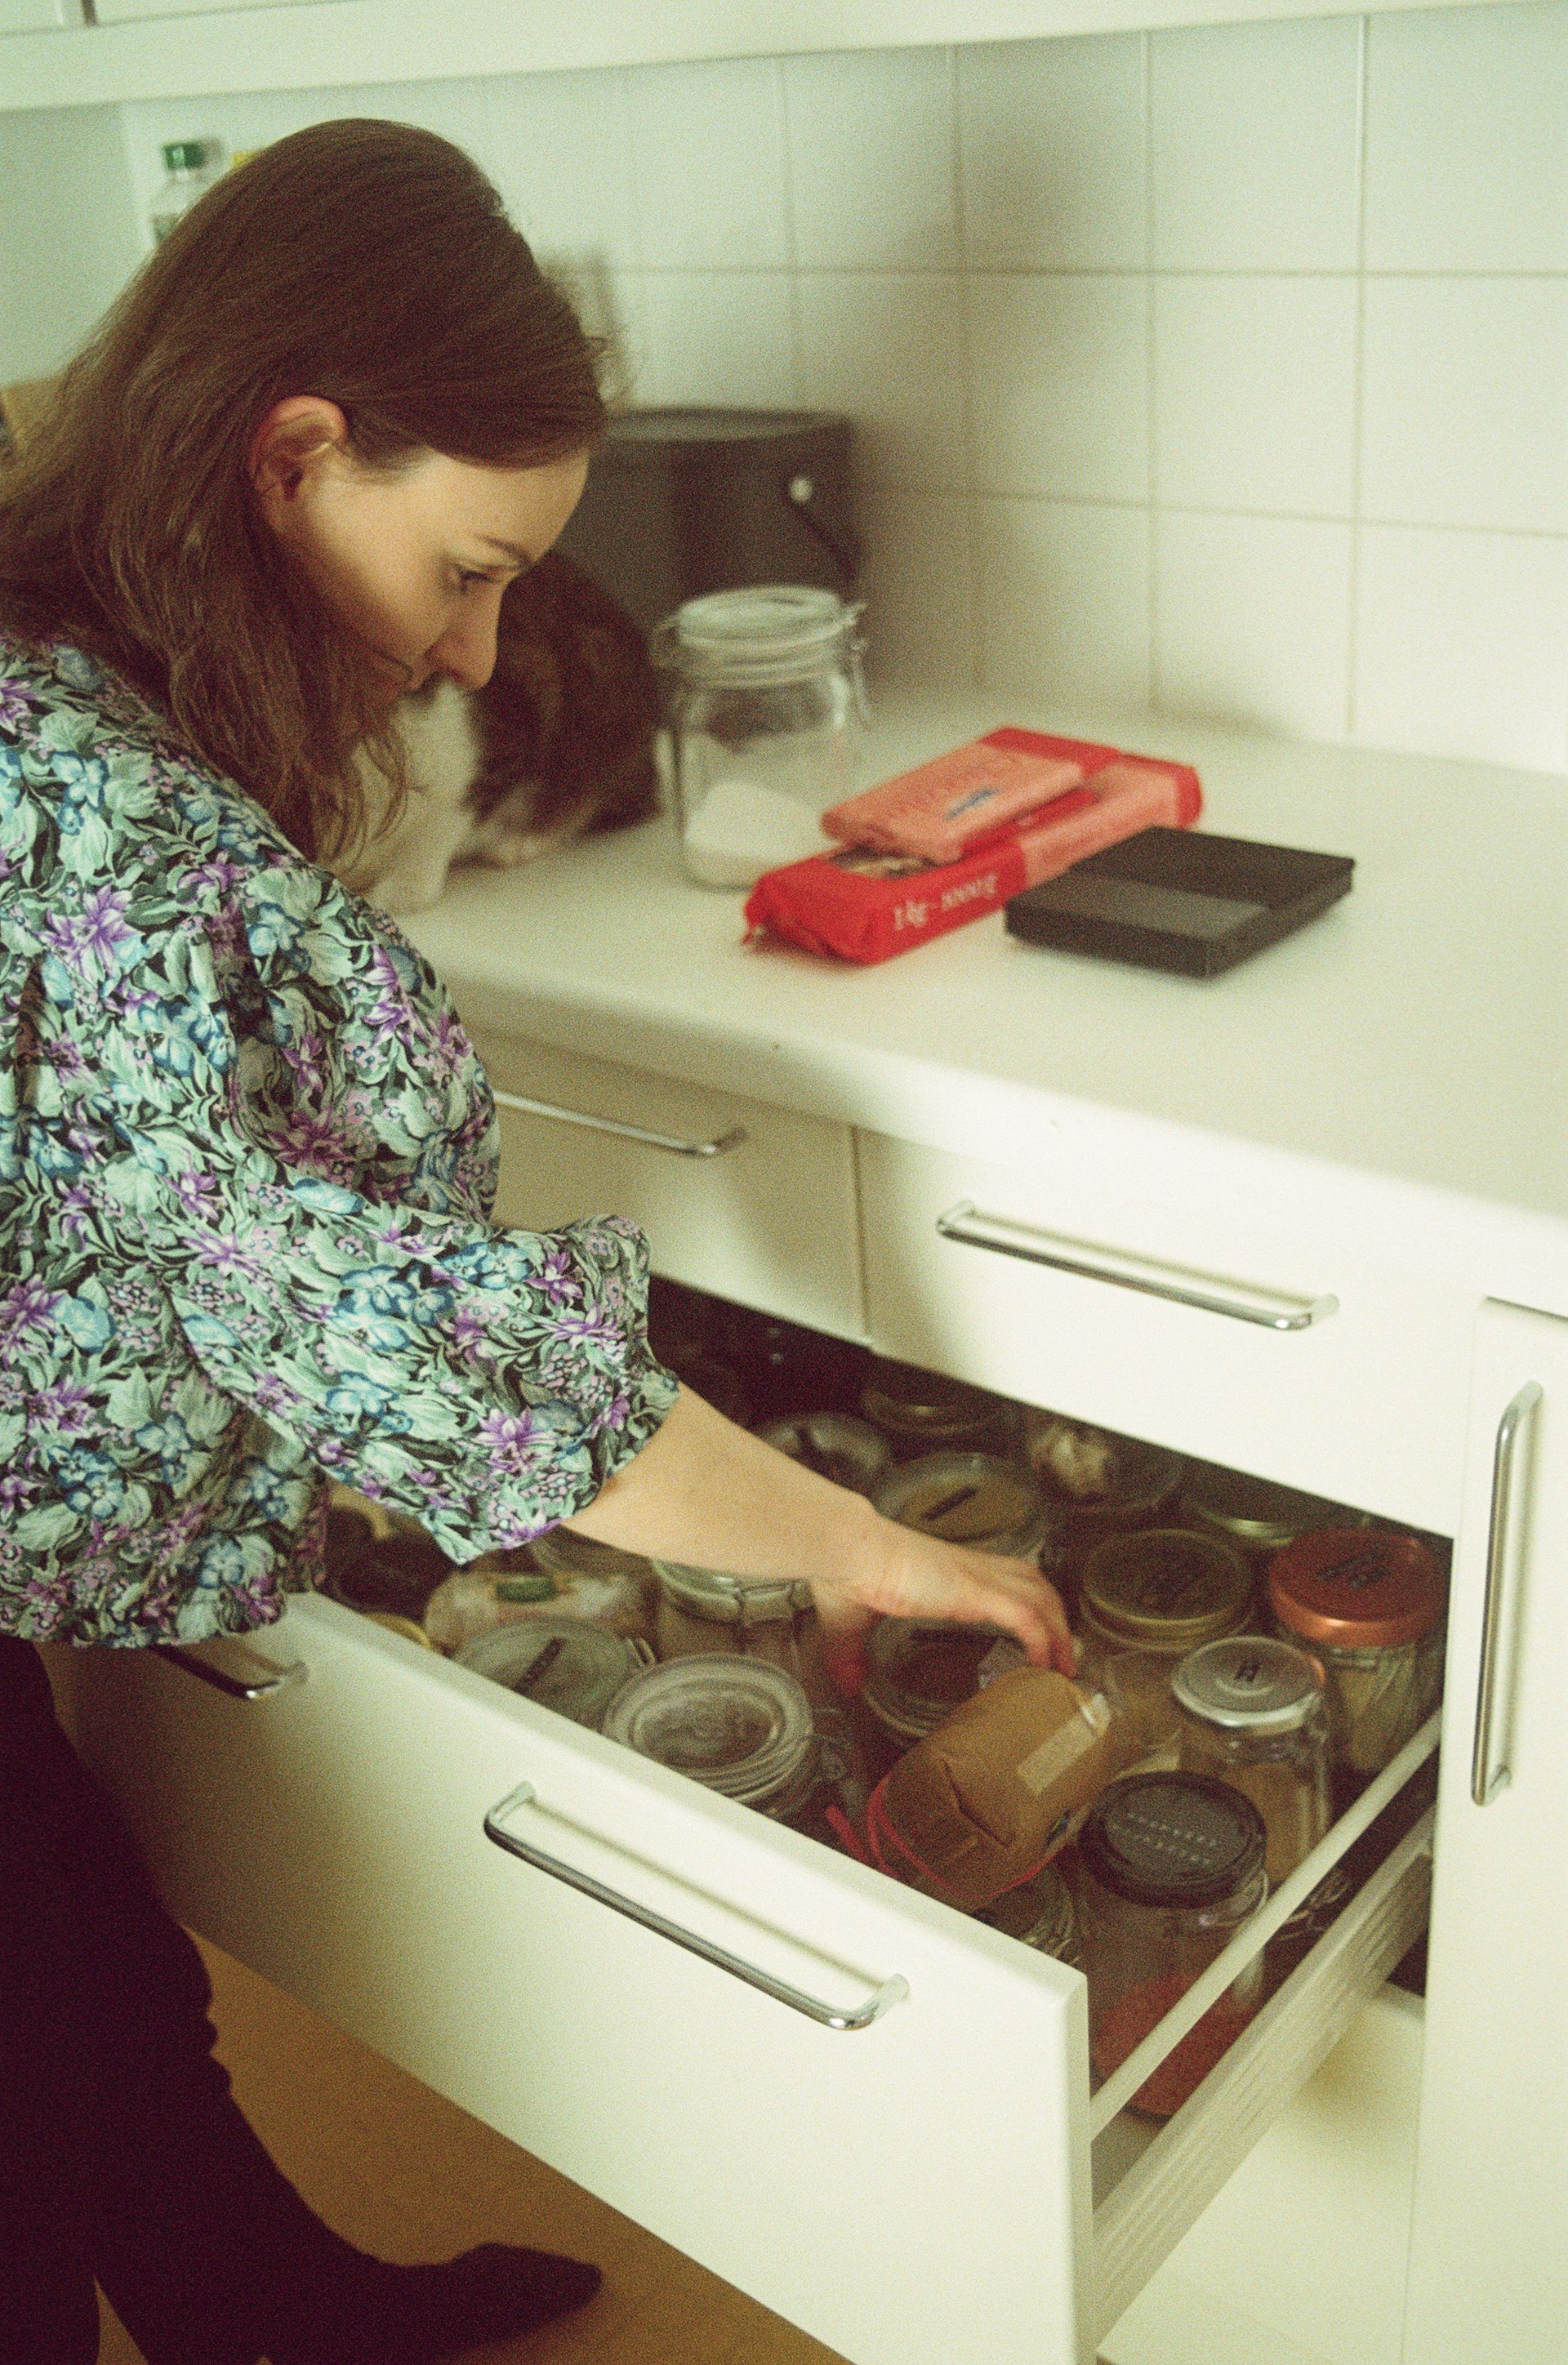 Frau öffnet Schublade in Küche